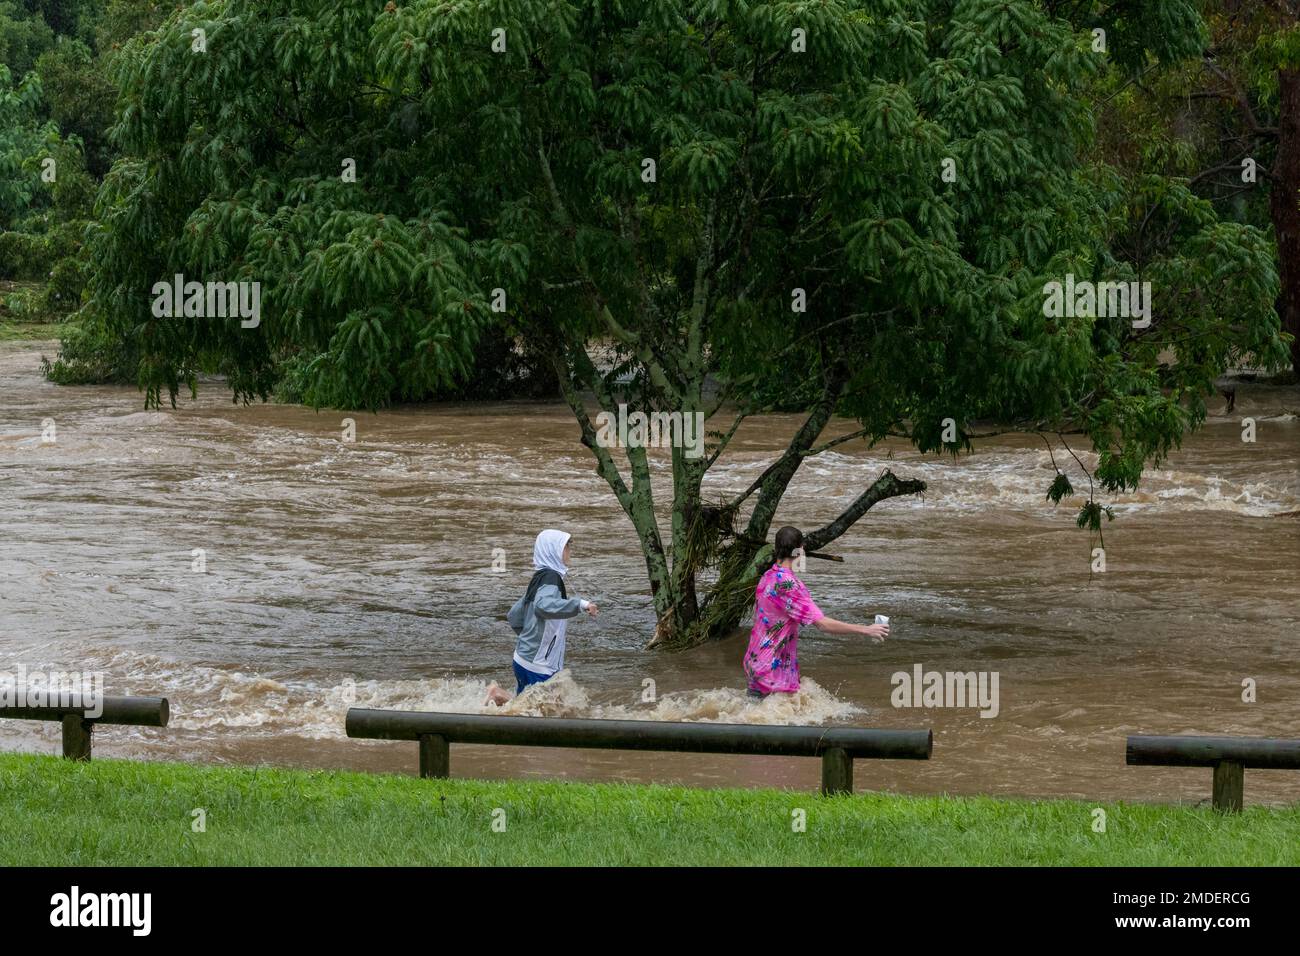 Les enfants jouent dangereusement dans les eaux de crue au parc Teralba à Mitchelton lors de l'événement d'inondation extrême de février 2022 en Australie Banque D'Images